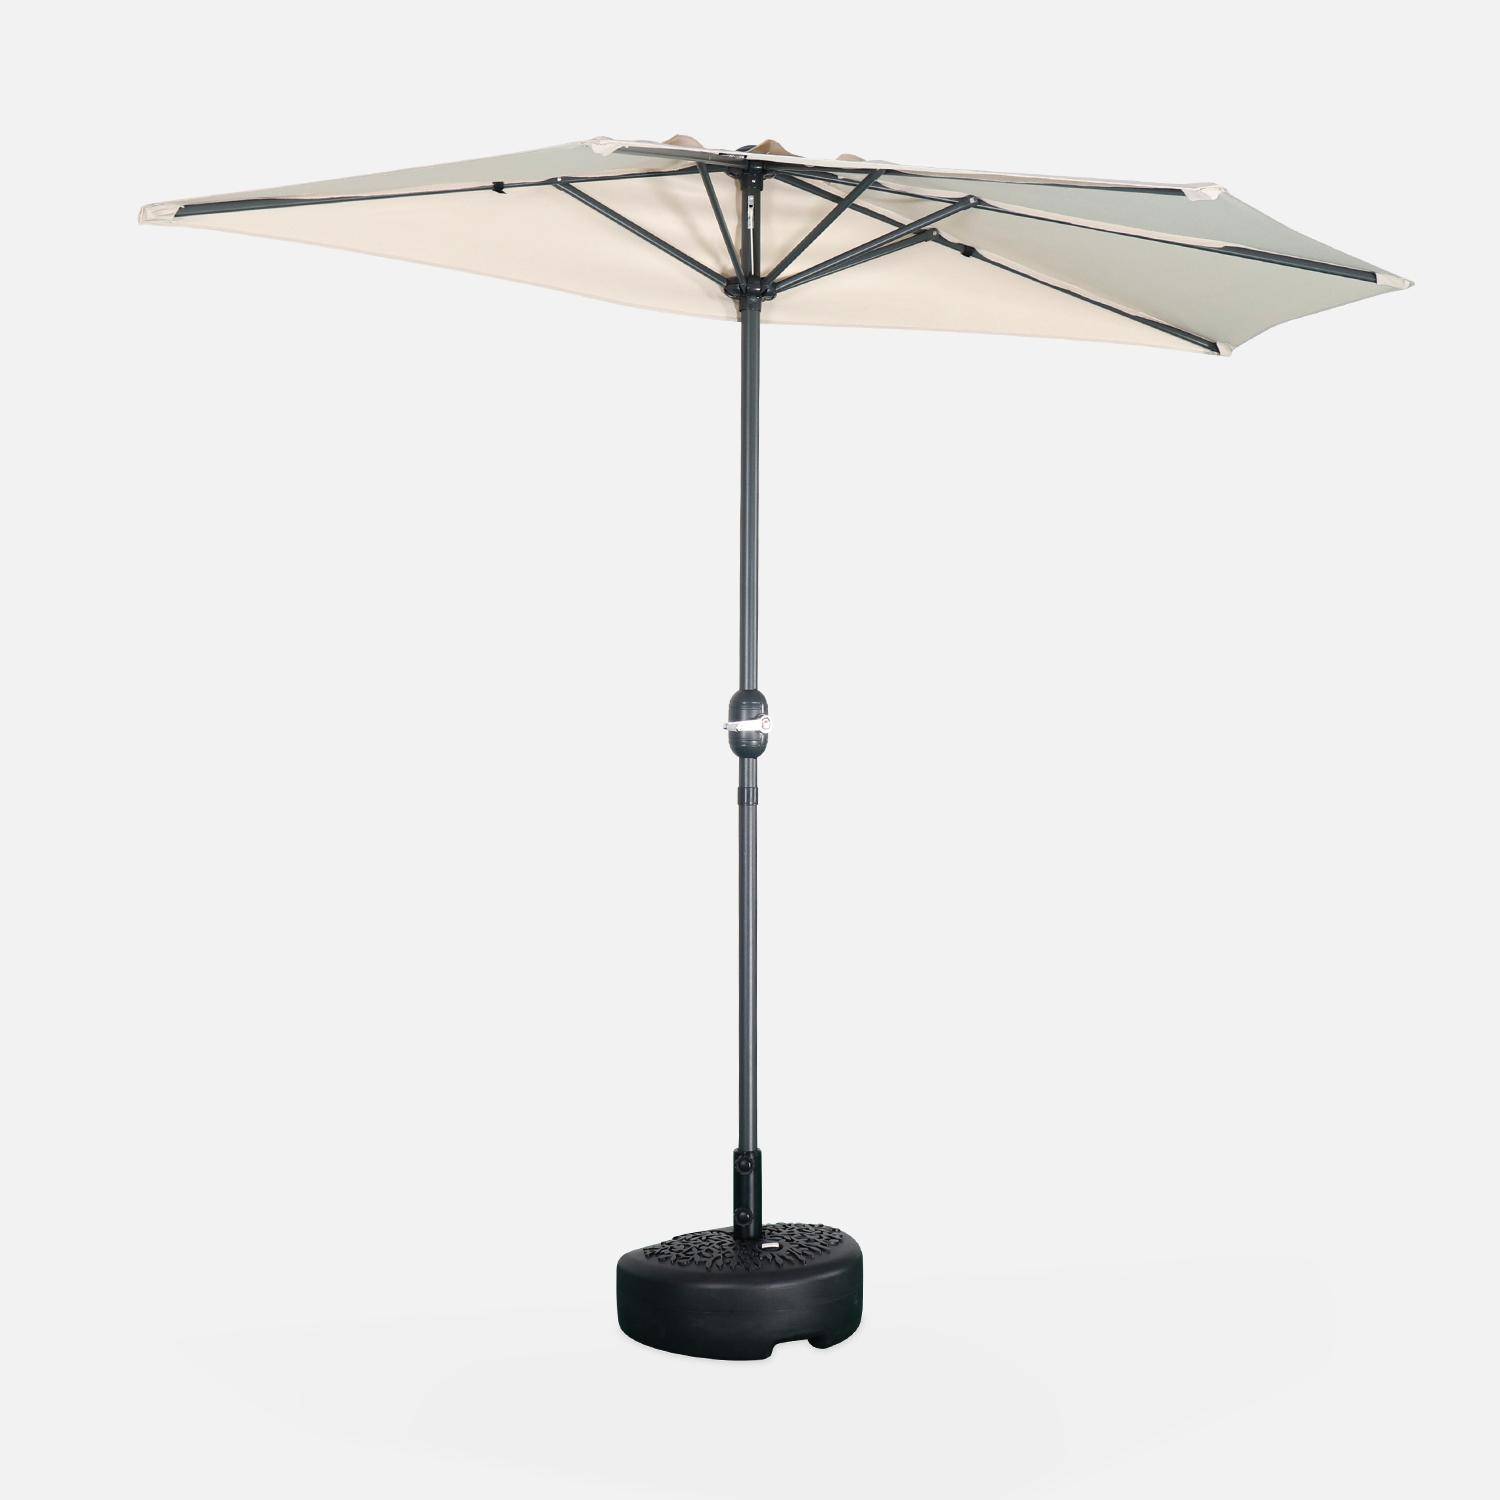  Parasol para balcón Ø250cm - CALVI - Medio parasol recto, mástil de aluminio con manivela, tejido arena Photo2